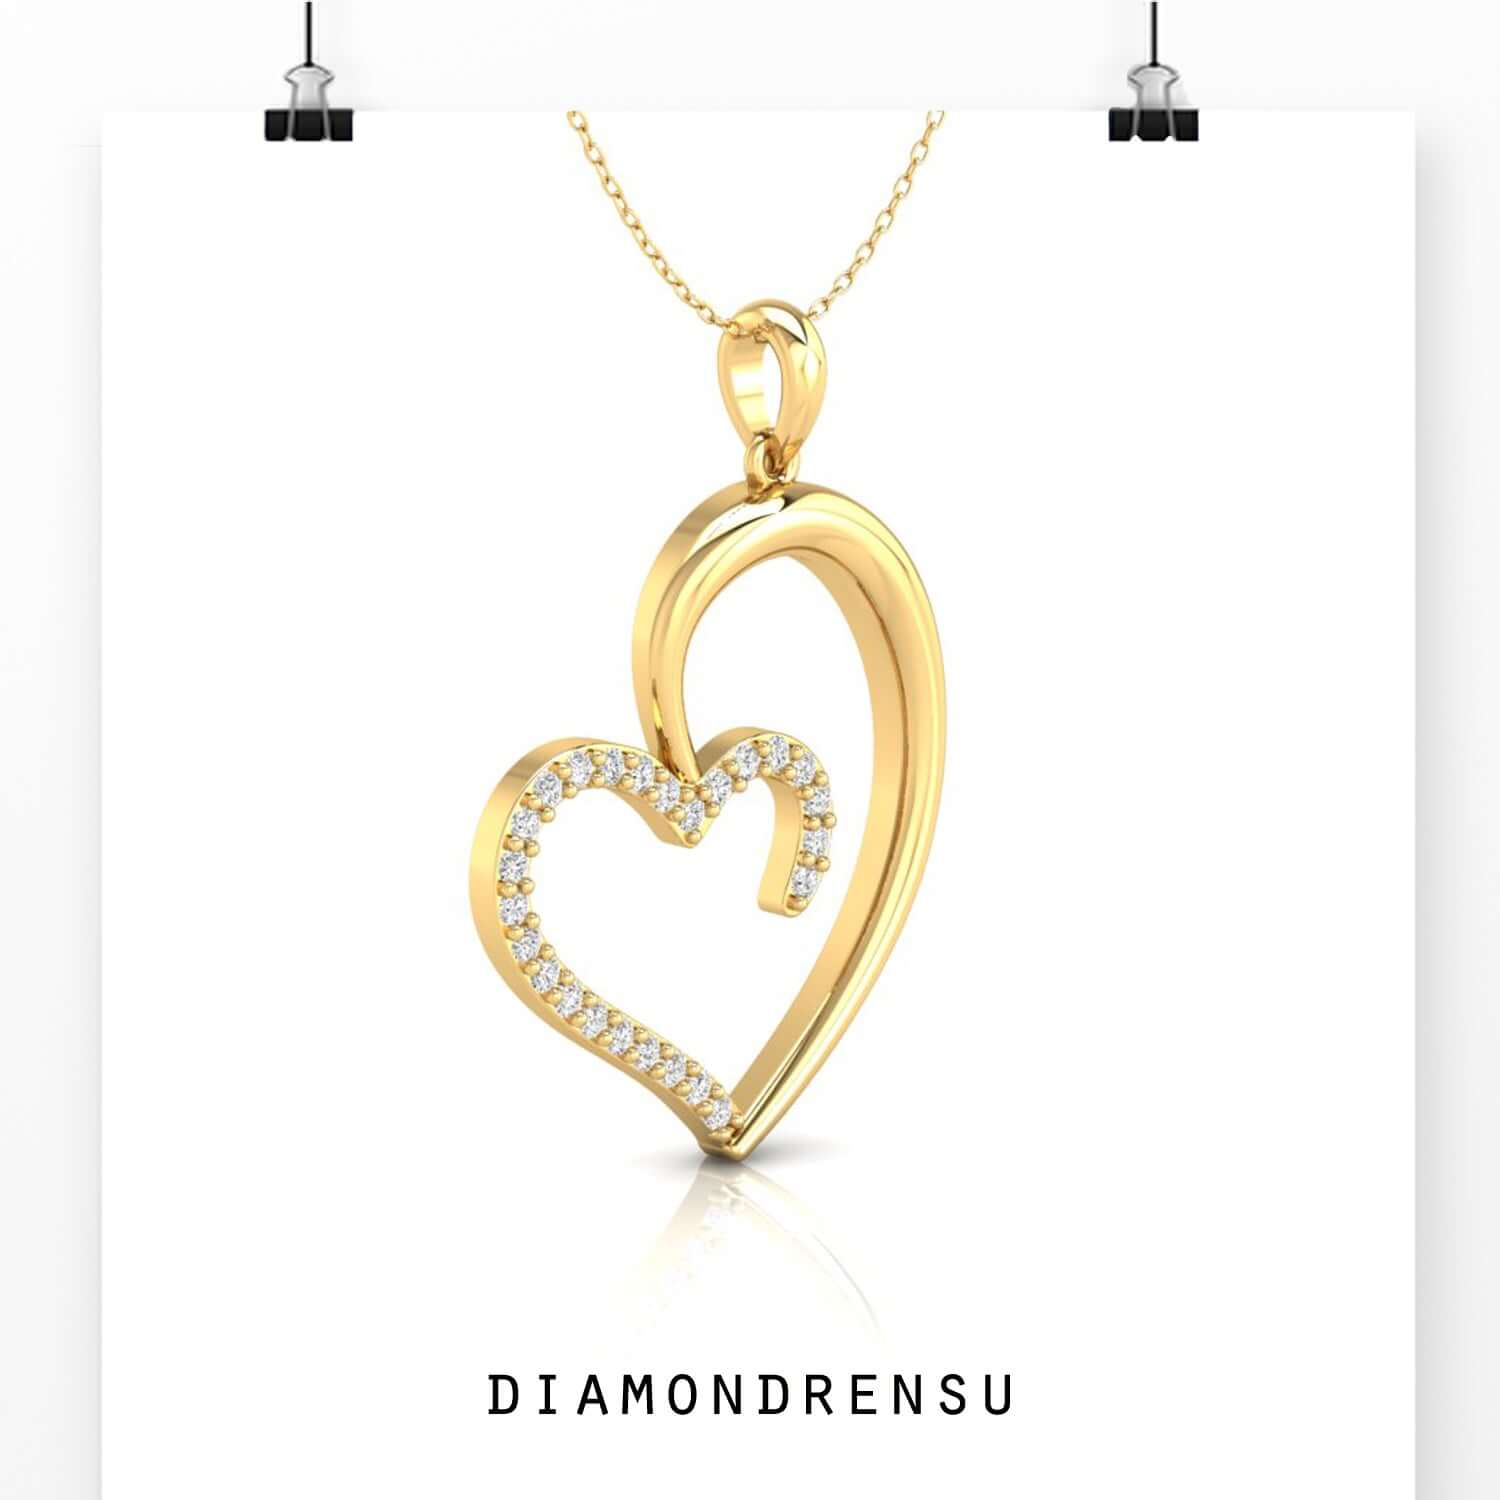 heart pendant - diamondrensu